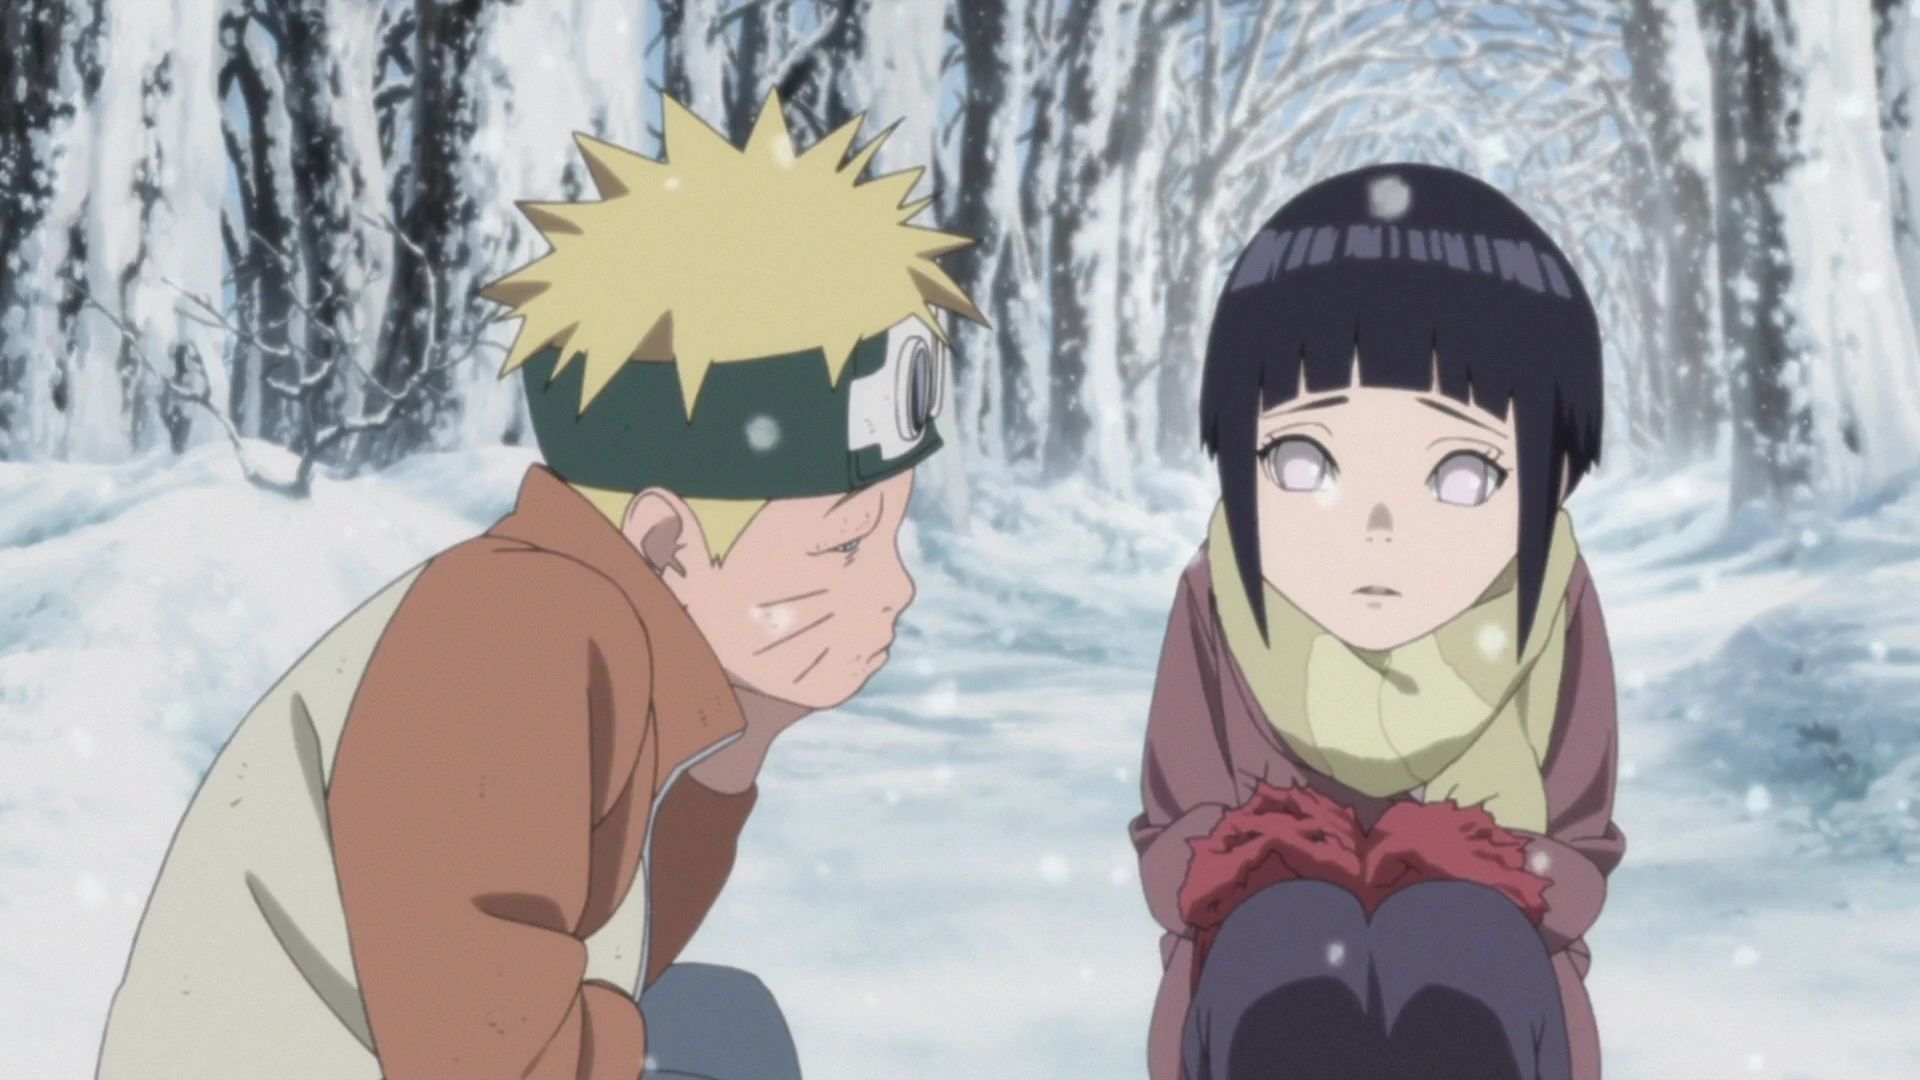 Hinata and Naruto sitting